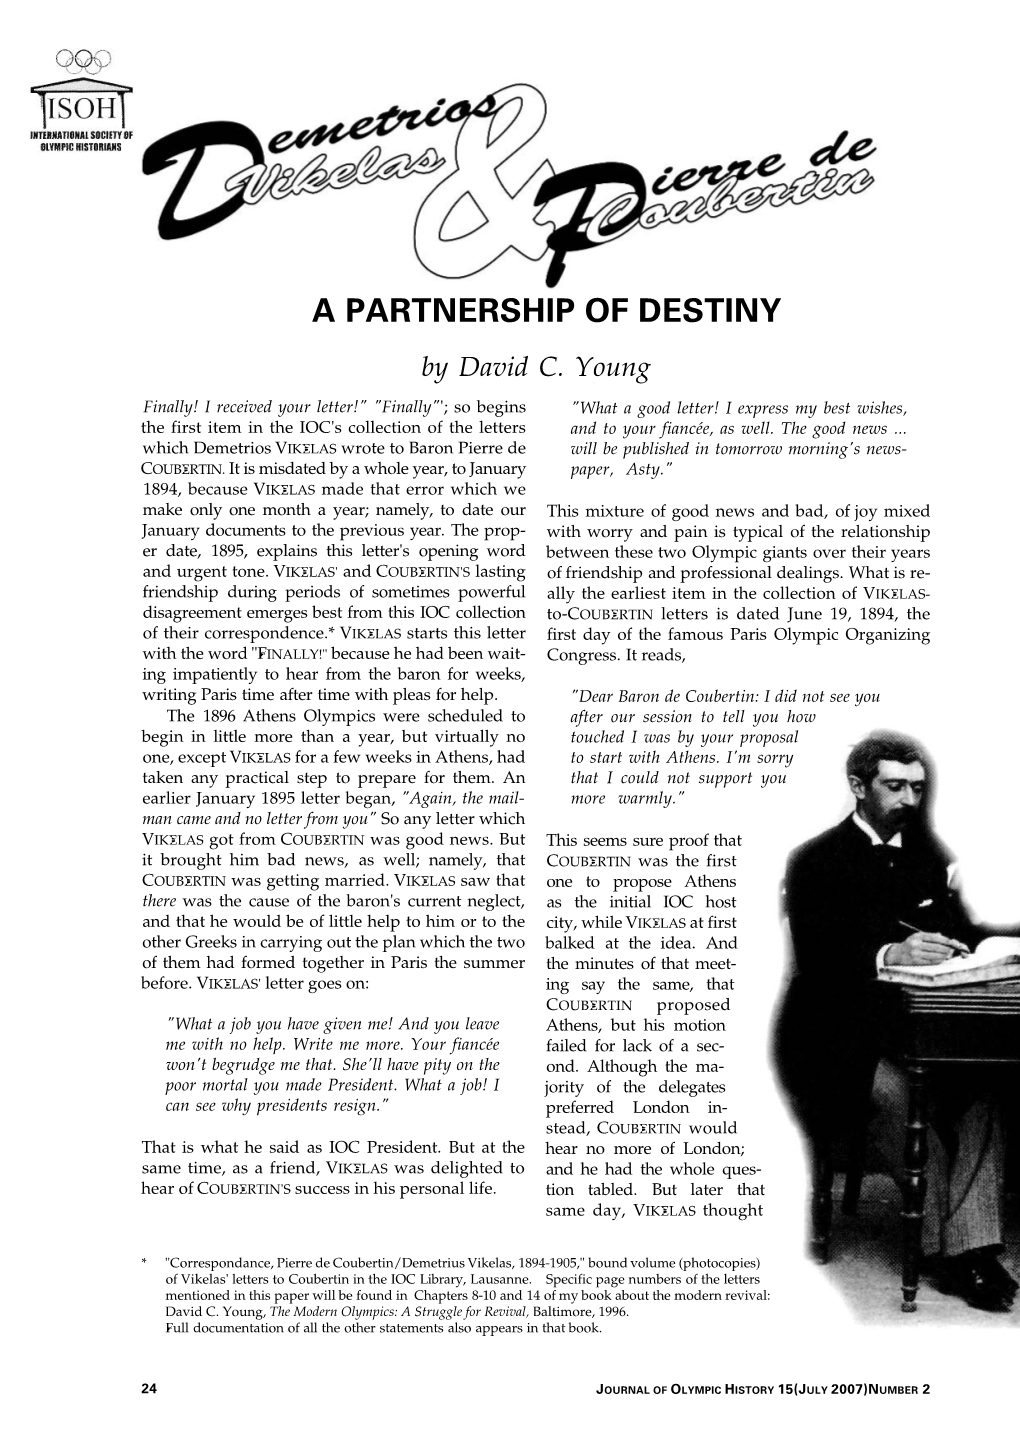 A PARTNERSHIP of DESTINY by David C